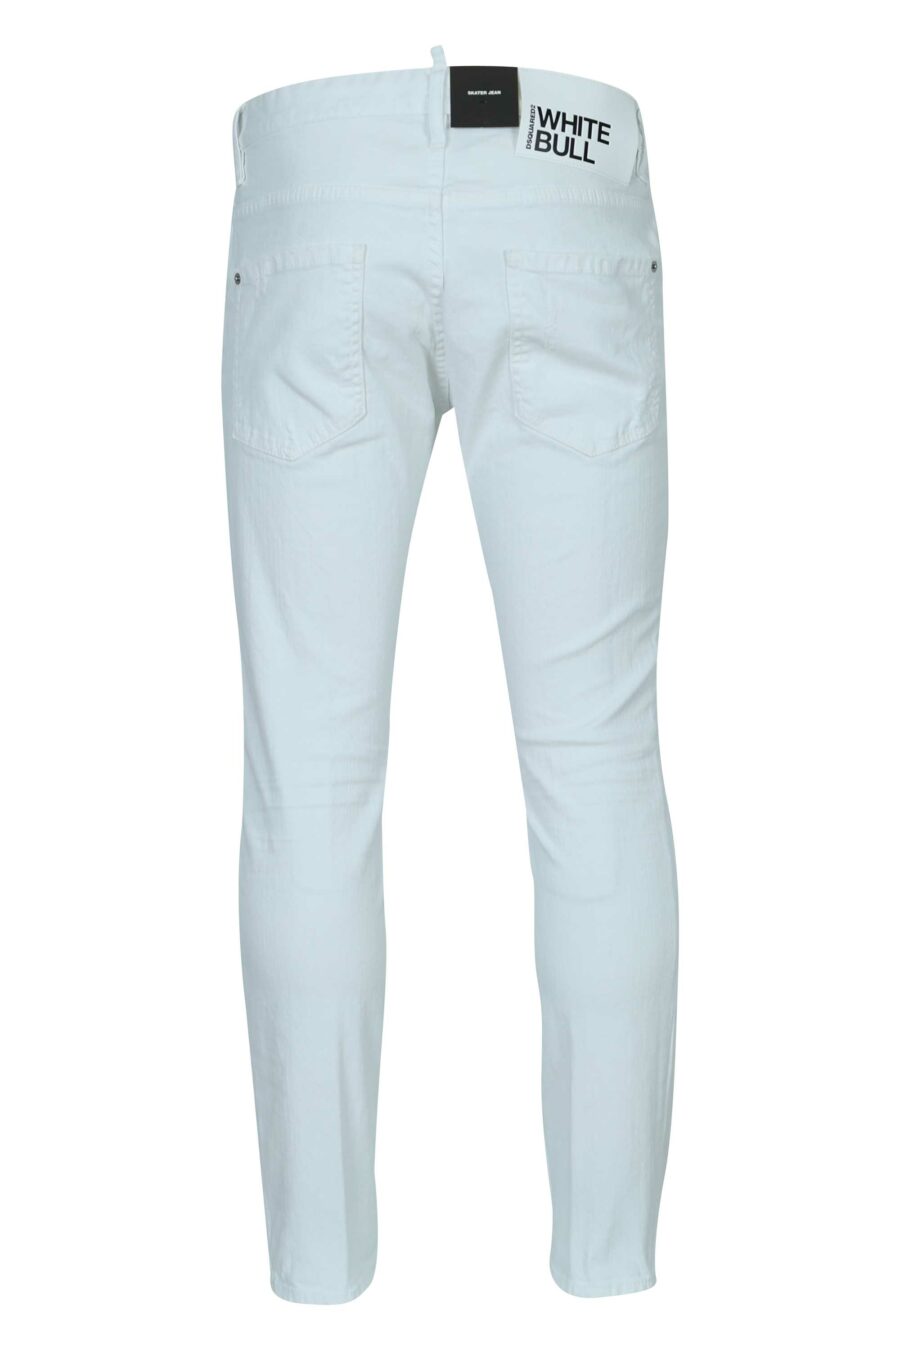 White "skater jean" jeans - 8054148472238 1